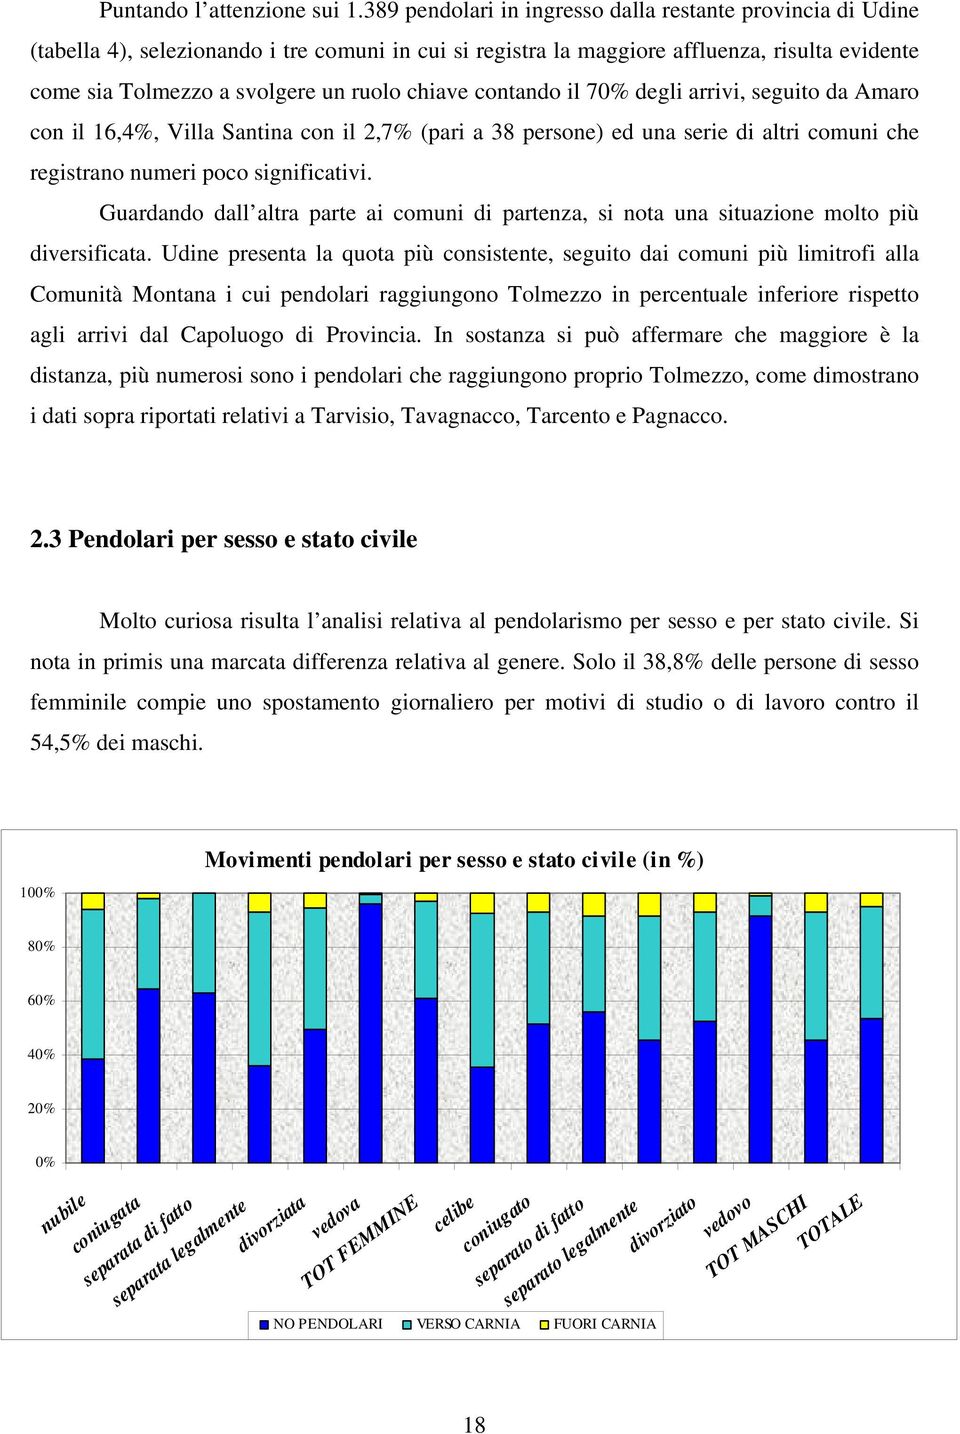 chiave contando il 70% degli arrivi, seguito da Amaro con il 16,4%, Villa Santina con il 2,7% (pari a 38 persone) ed una serie di altri comuni che registrano numeri poco significativi.